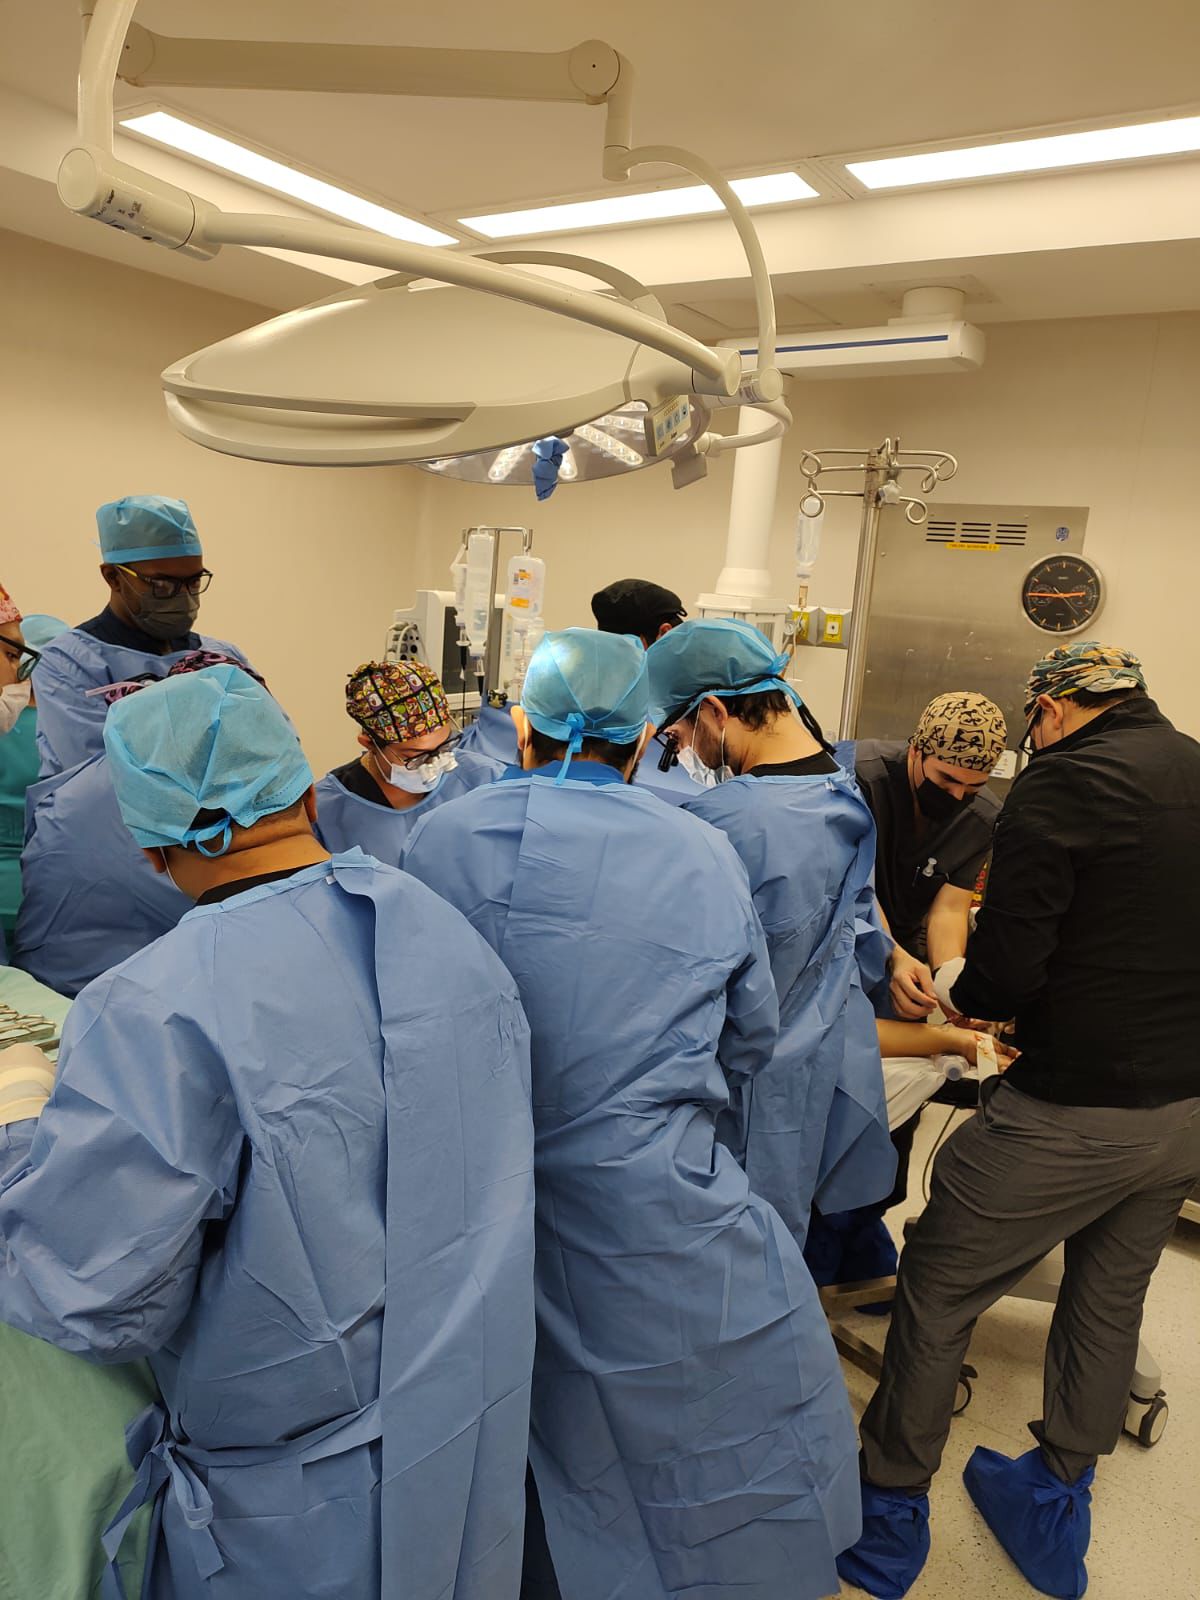 Con éxito se realiza trasplante renal en el Hospital “Dr. Agustín O’Horán”.